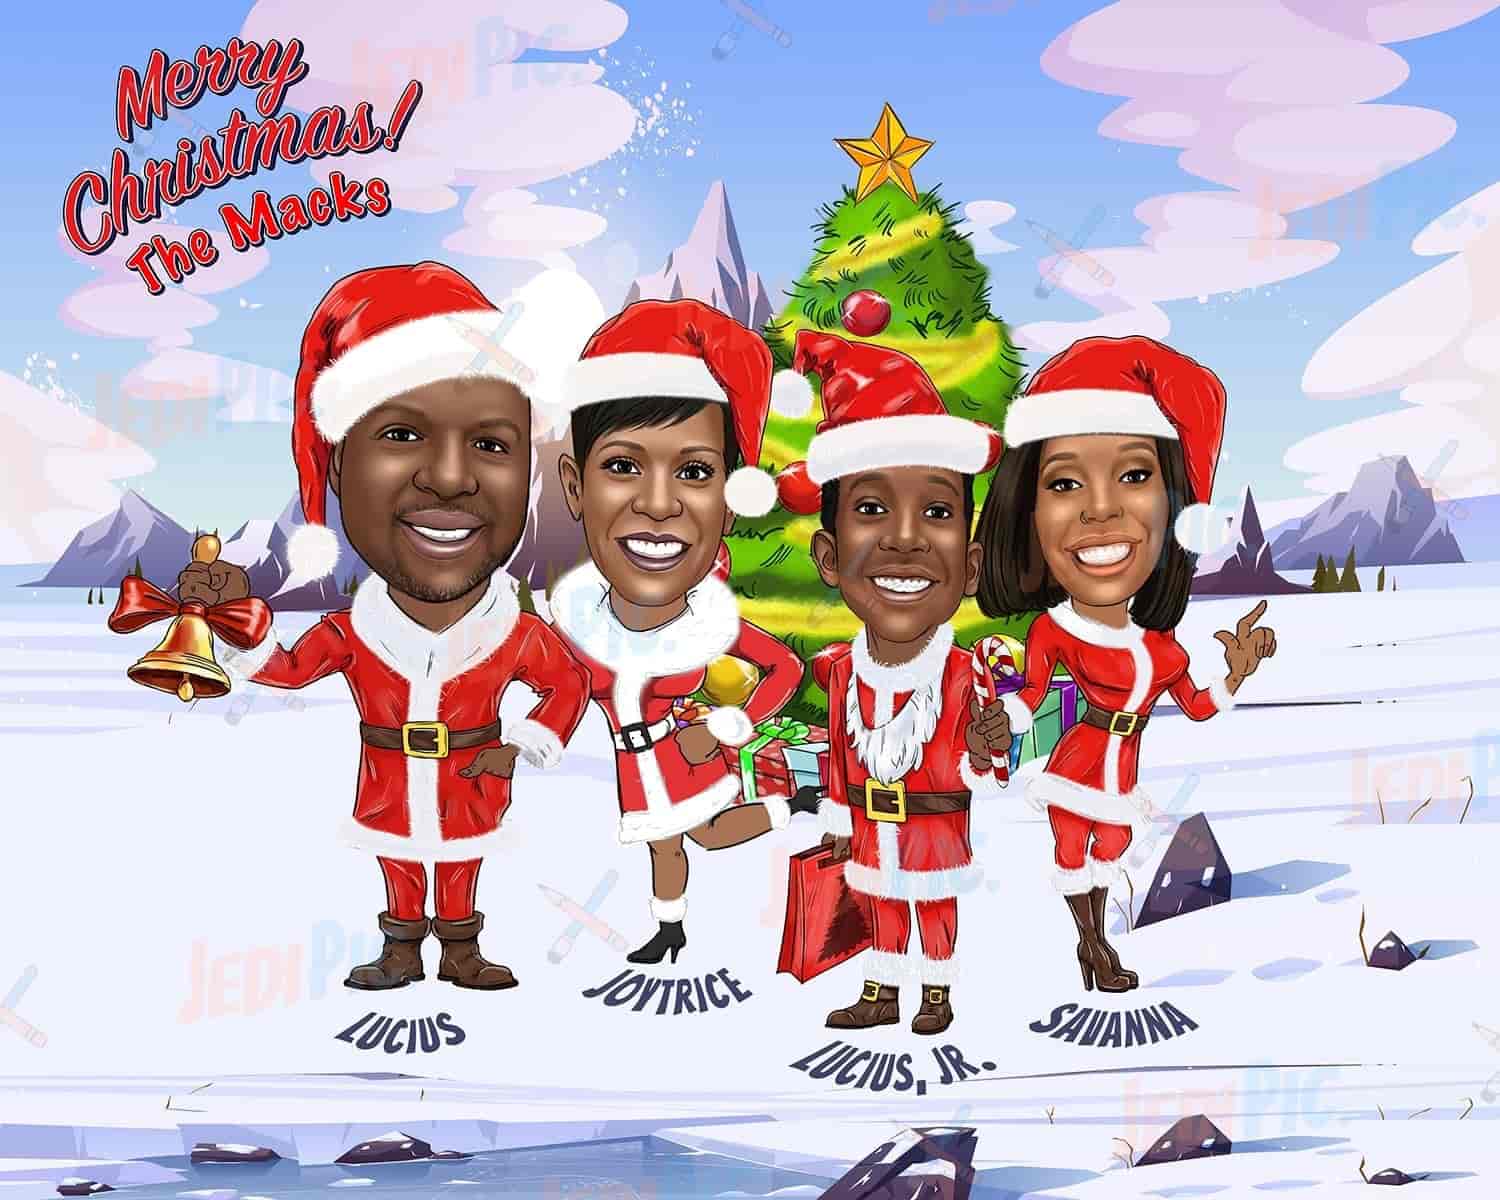 Family around Christmas Tree - Cartoon Portrait from Photos